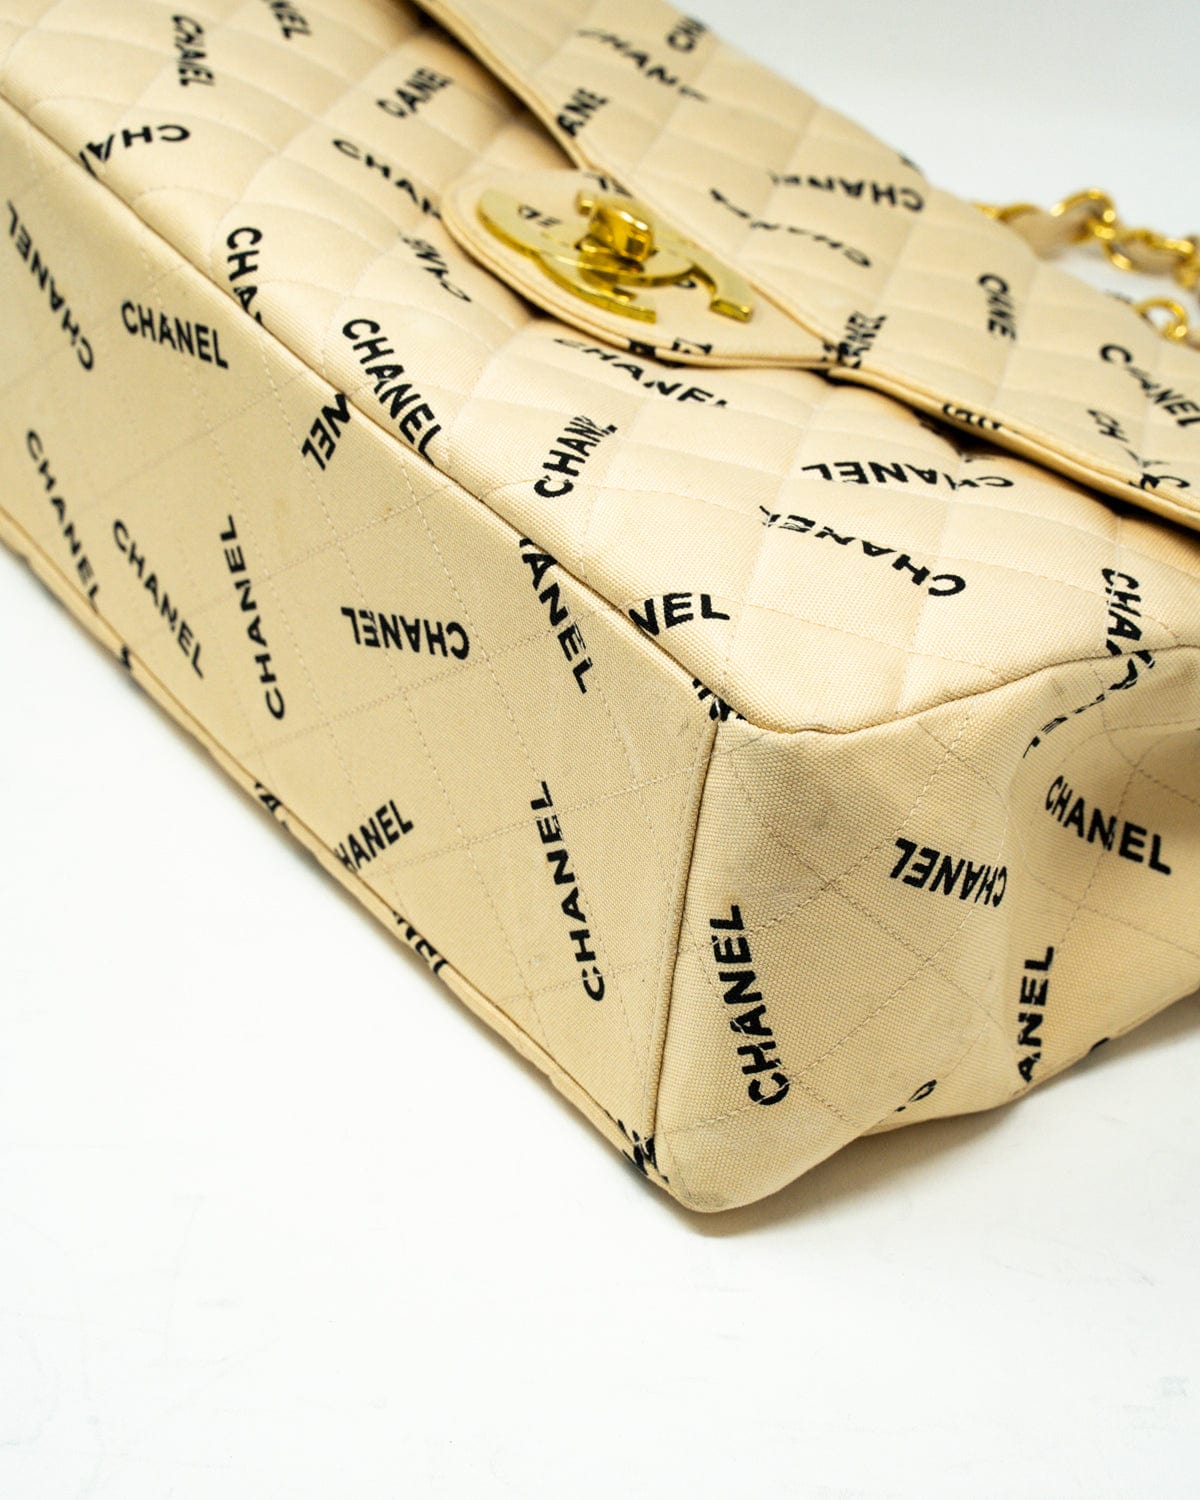 Chanel Chanel Canvas Logo beige Jumbo bag - AWL2558